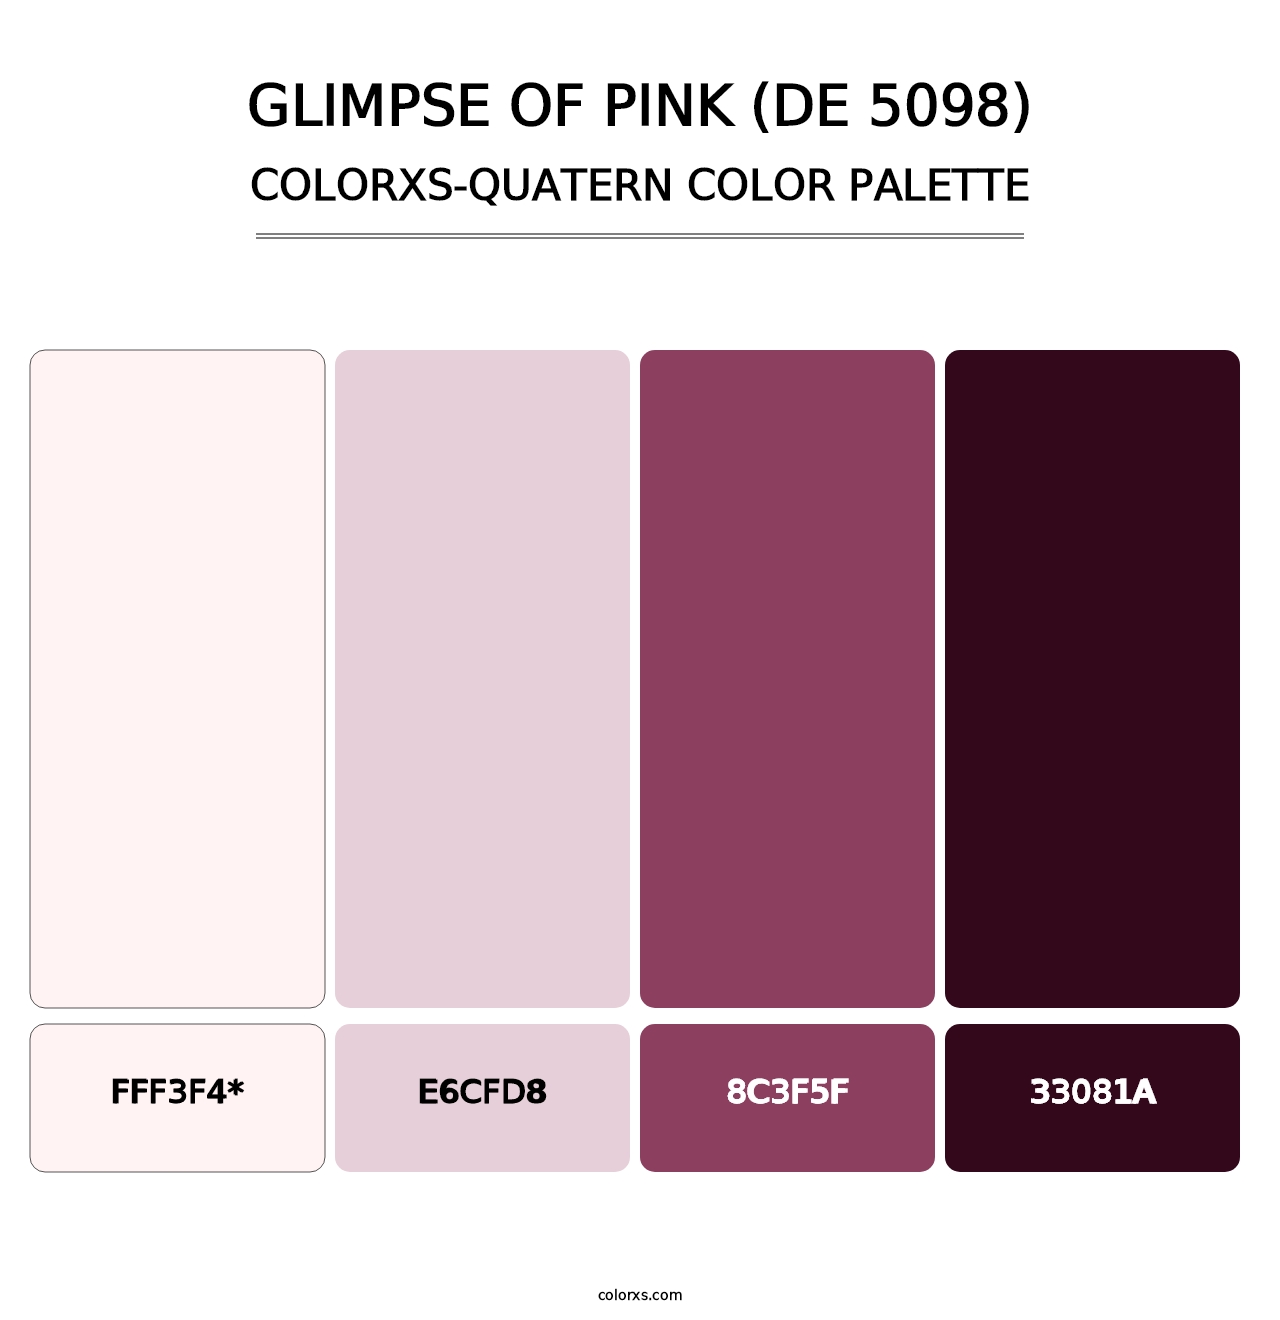 Glimpse of Pink (DE 5098) - Colorxs Quatern Palette